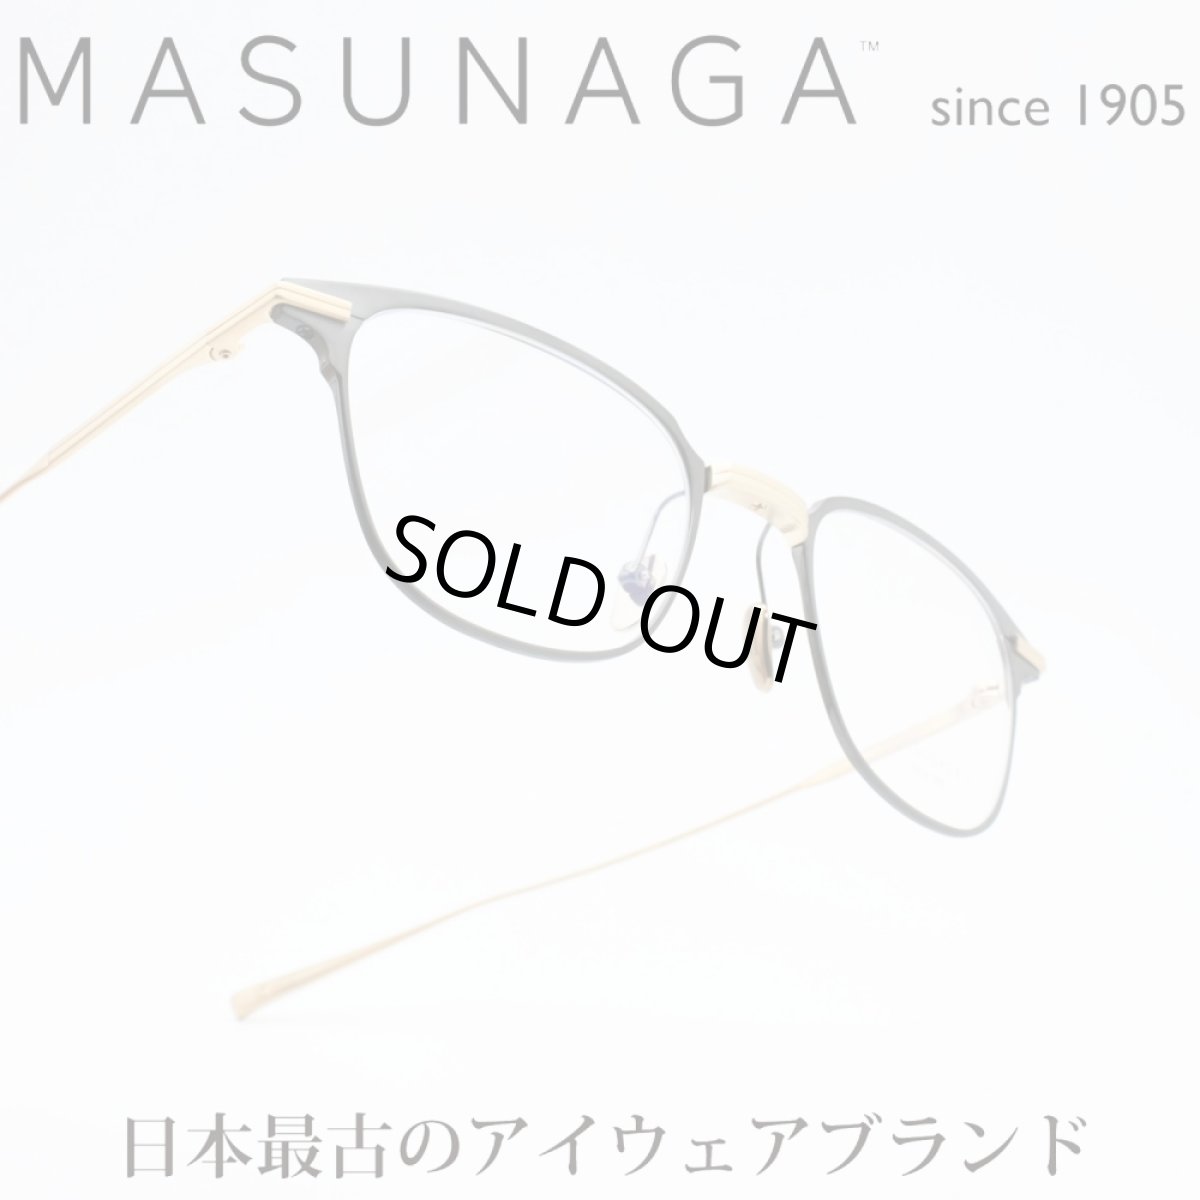 画像1: 増永眼鏡 MASUNAGA since 1905MADISON col-49 BLACK/GOLD (1)